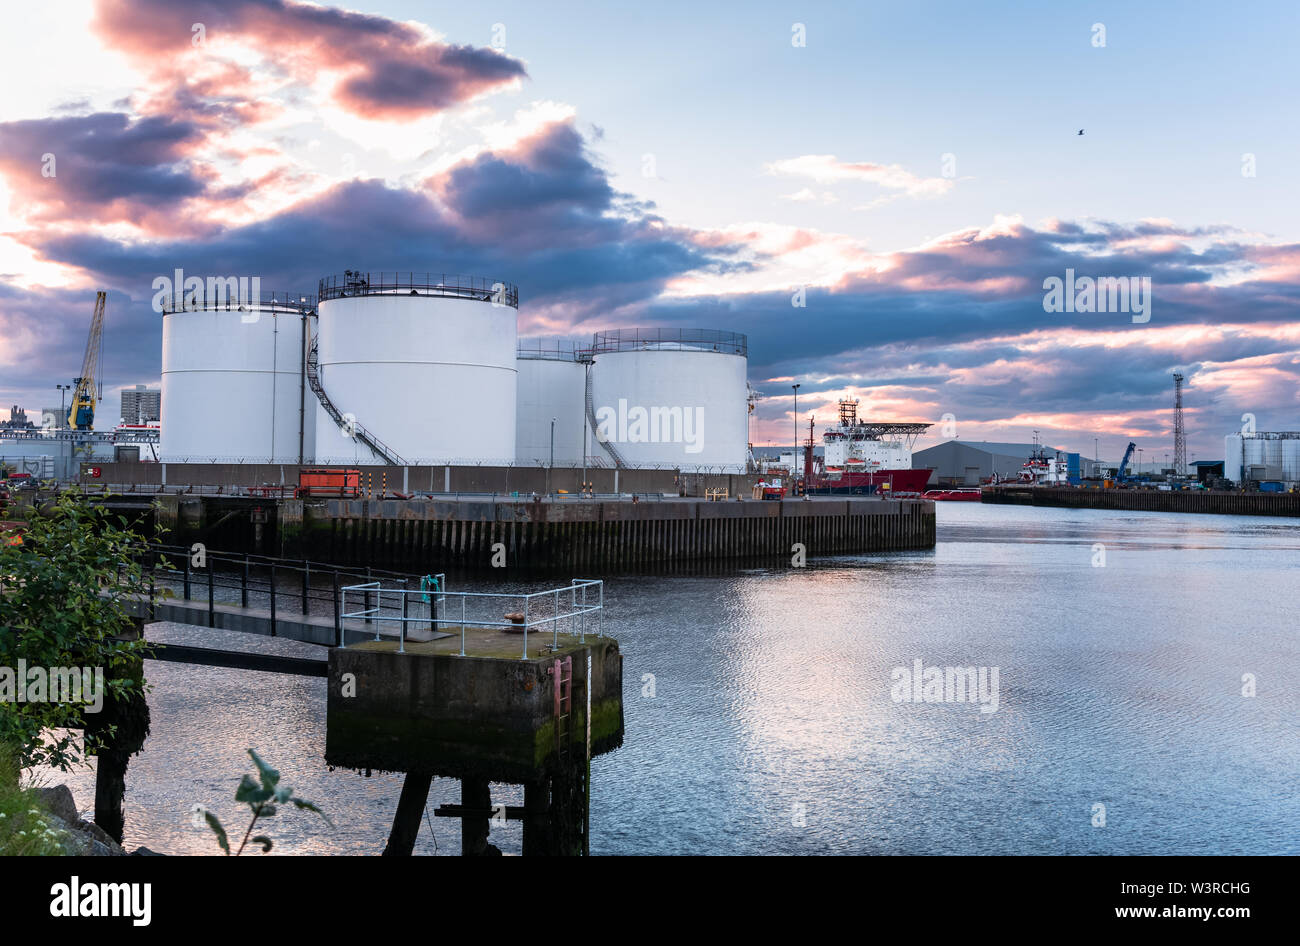 Öltanks auf einem Pier in einem industriehafen. Dramatische bunte Himmel in der Abenddämmerung. Stockfoto